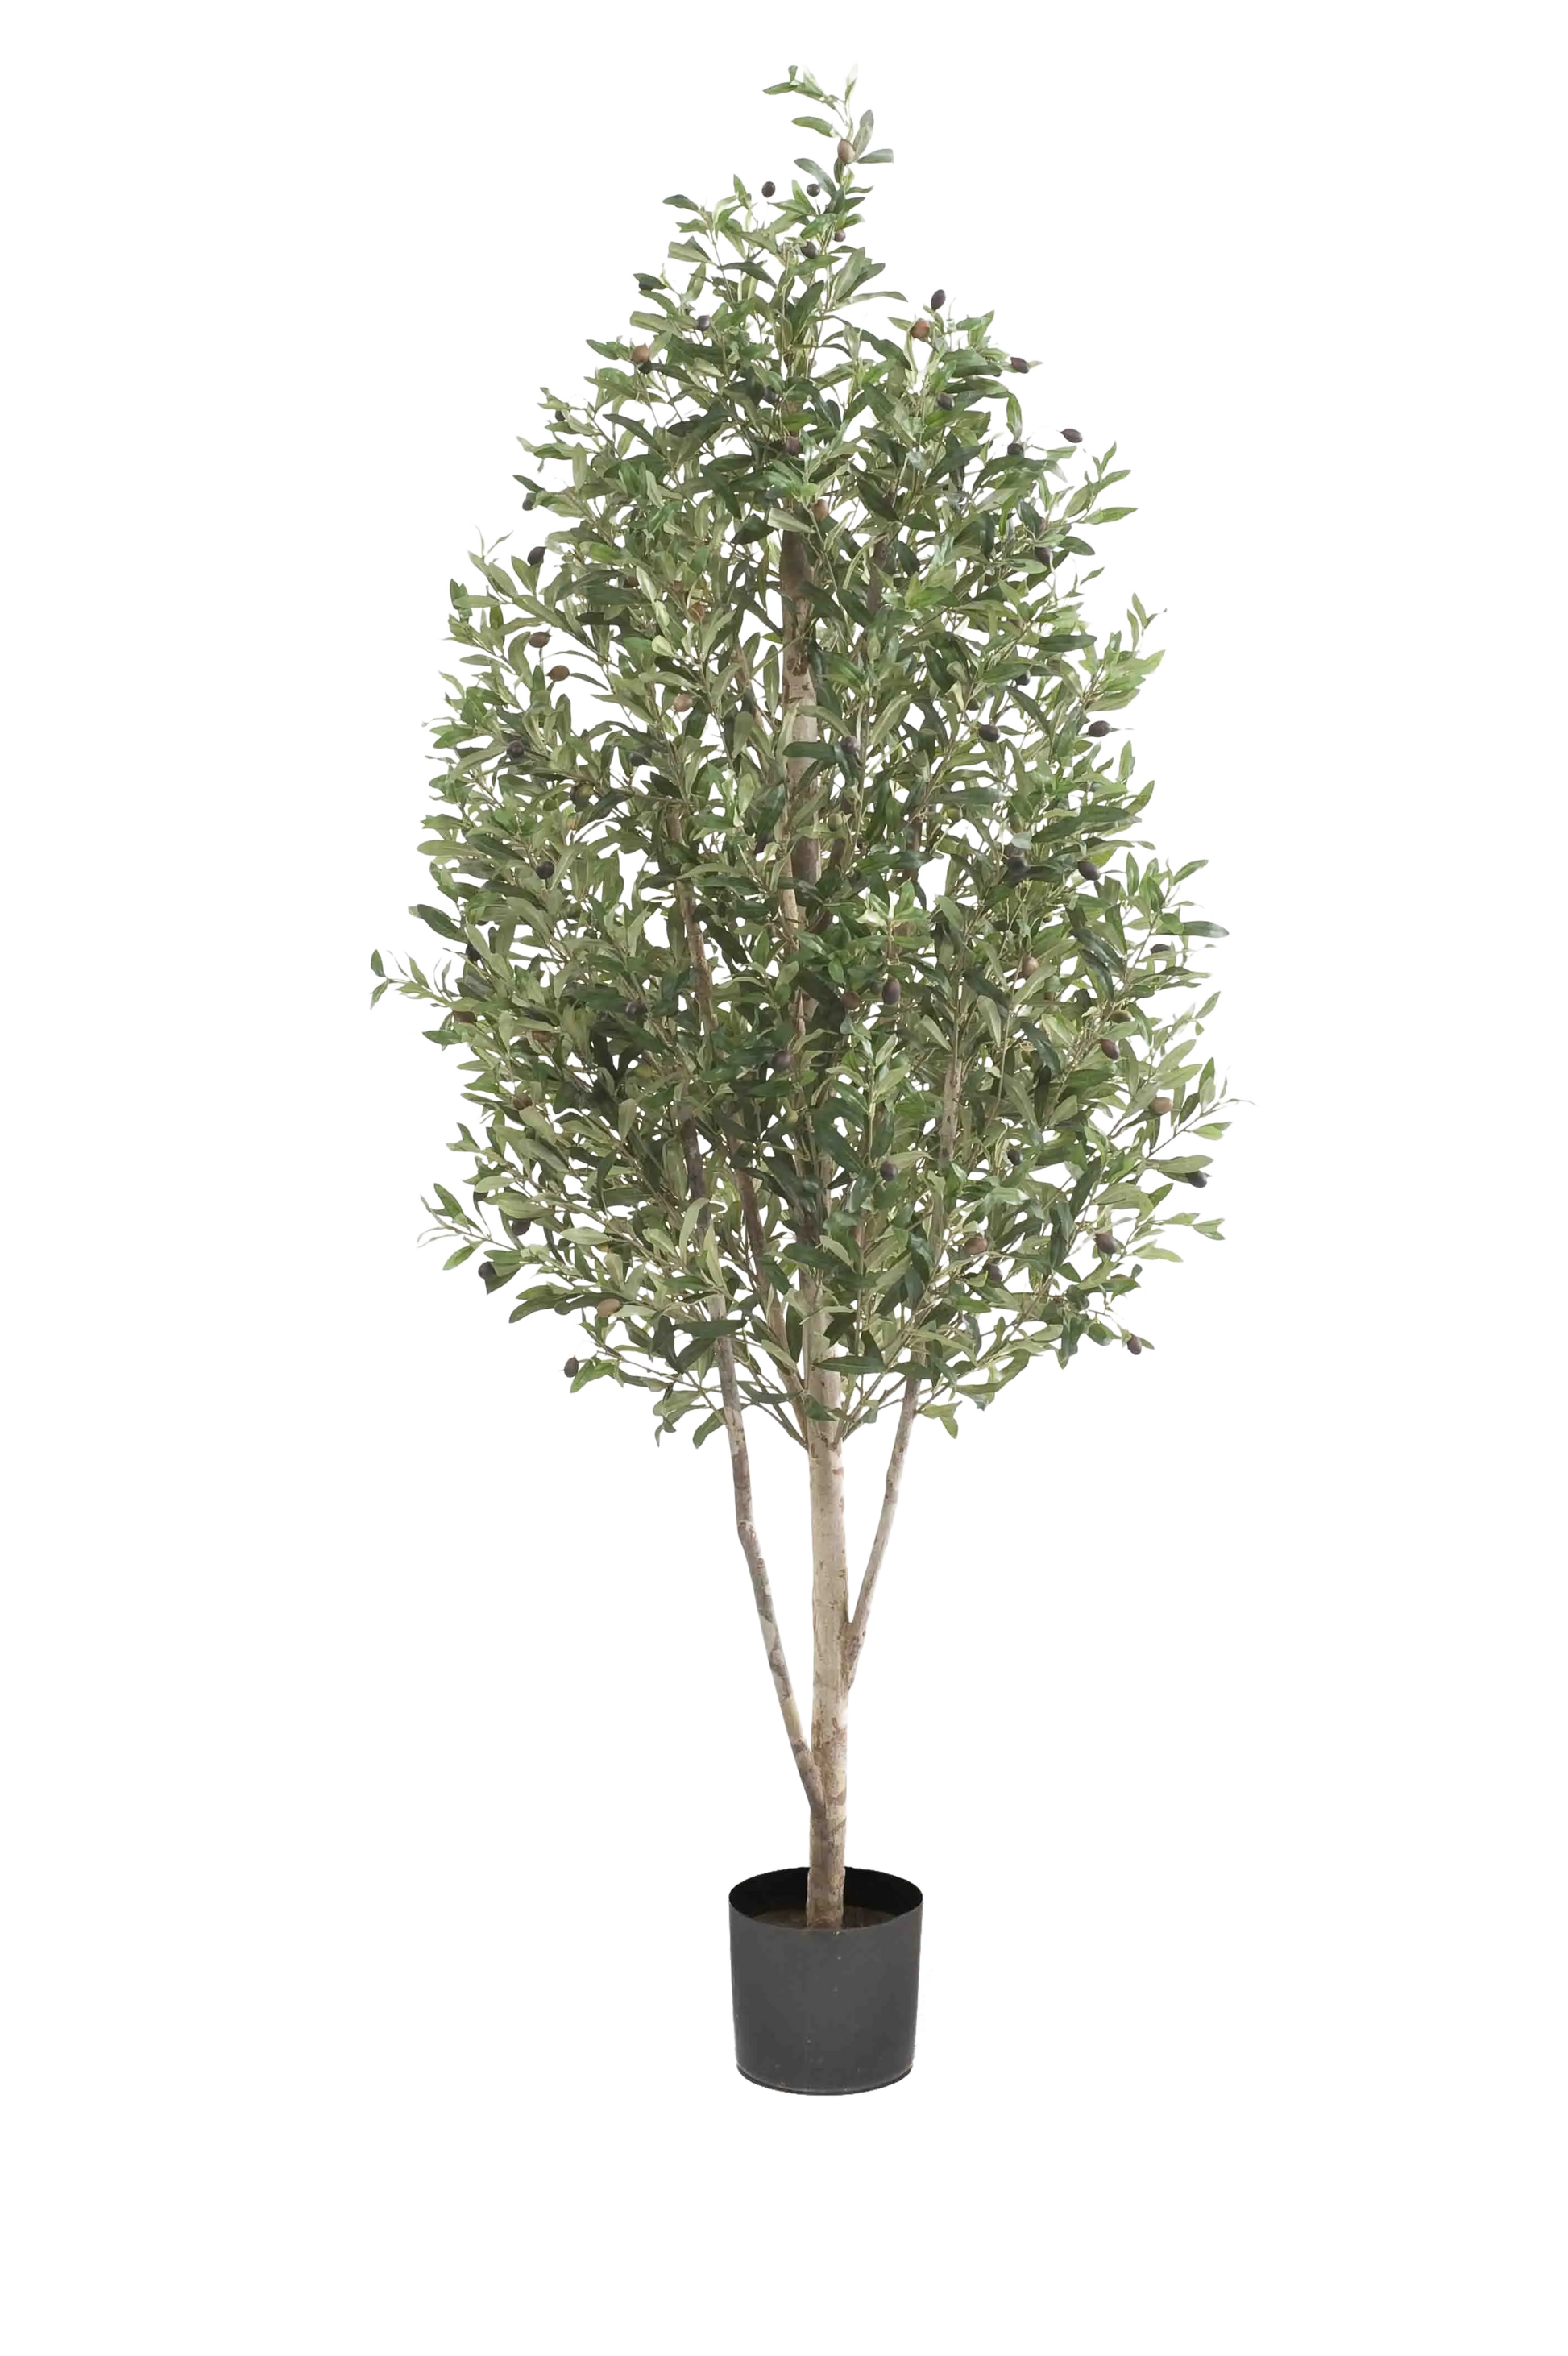 Künstlicher Olivenbaum - Cheyenne auf transparentem Hintergrund mit echt wirkenden Kunstblättern. Diese Kunstpflanze gehört zur Gattung/Familie der "Olivenbäume" bzw. "Kunst-Olivenbäume".